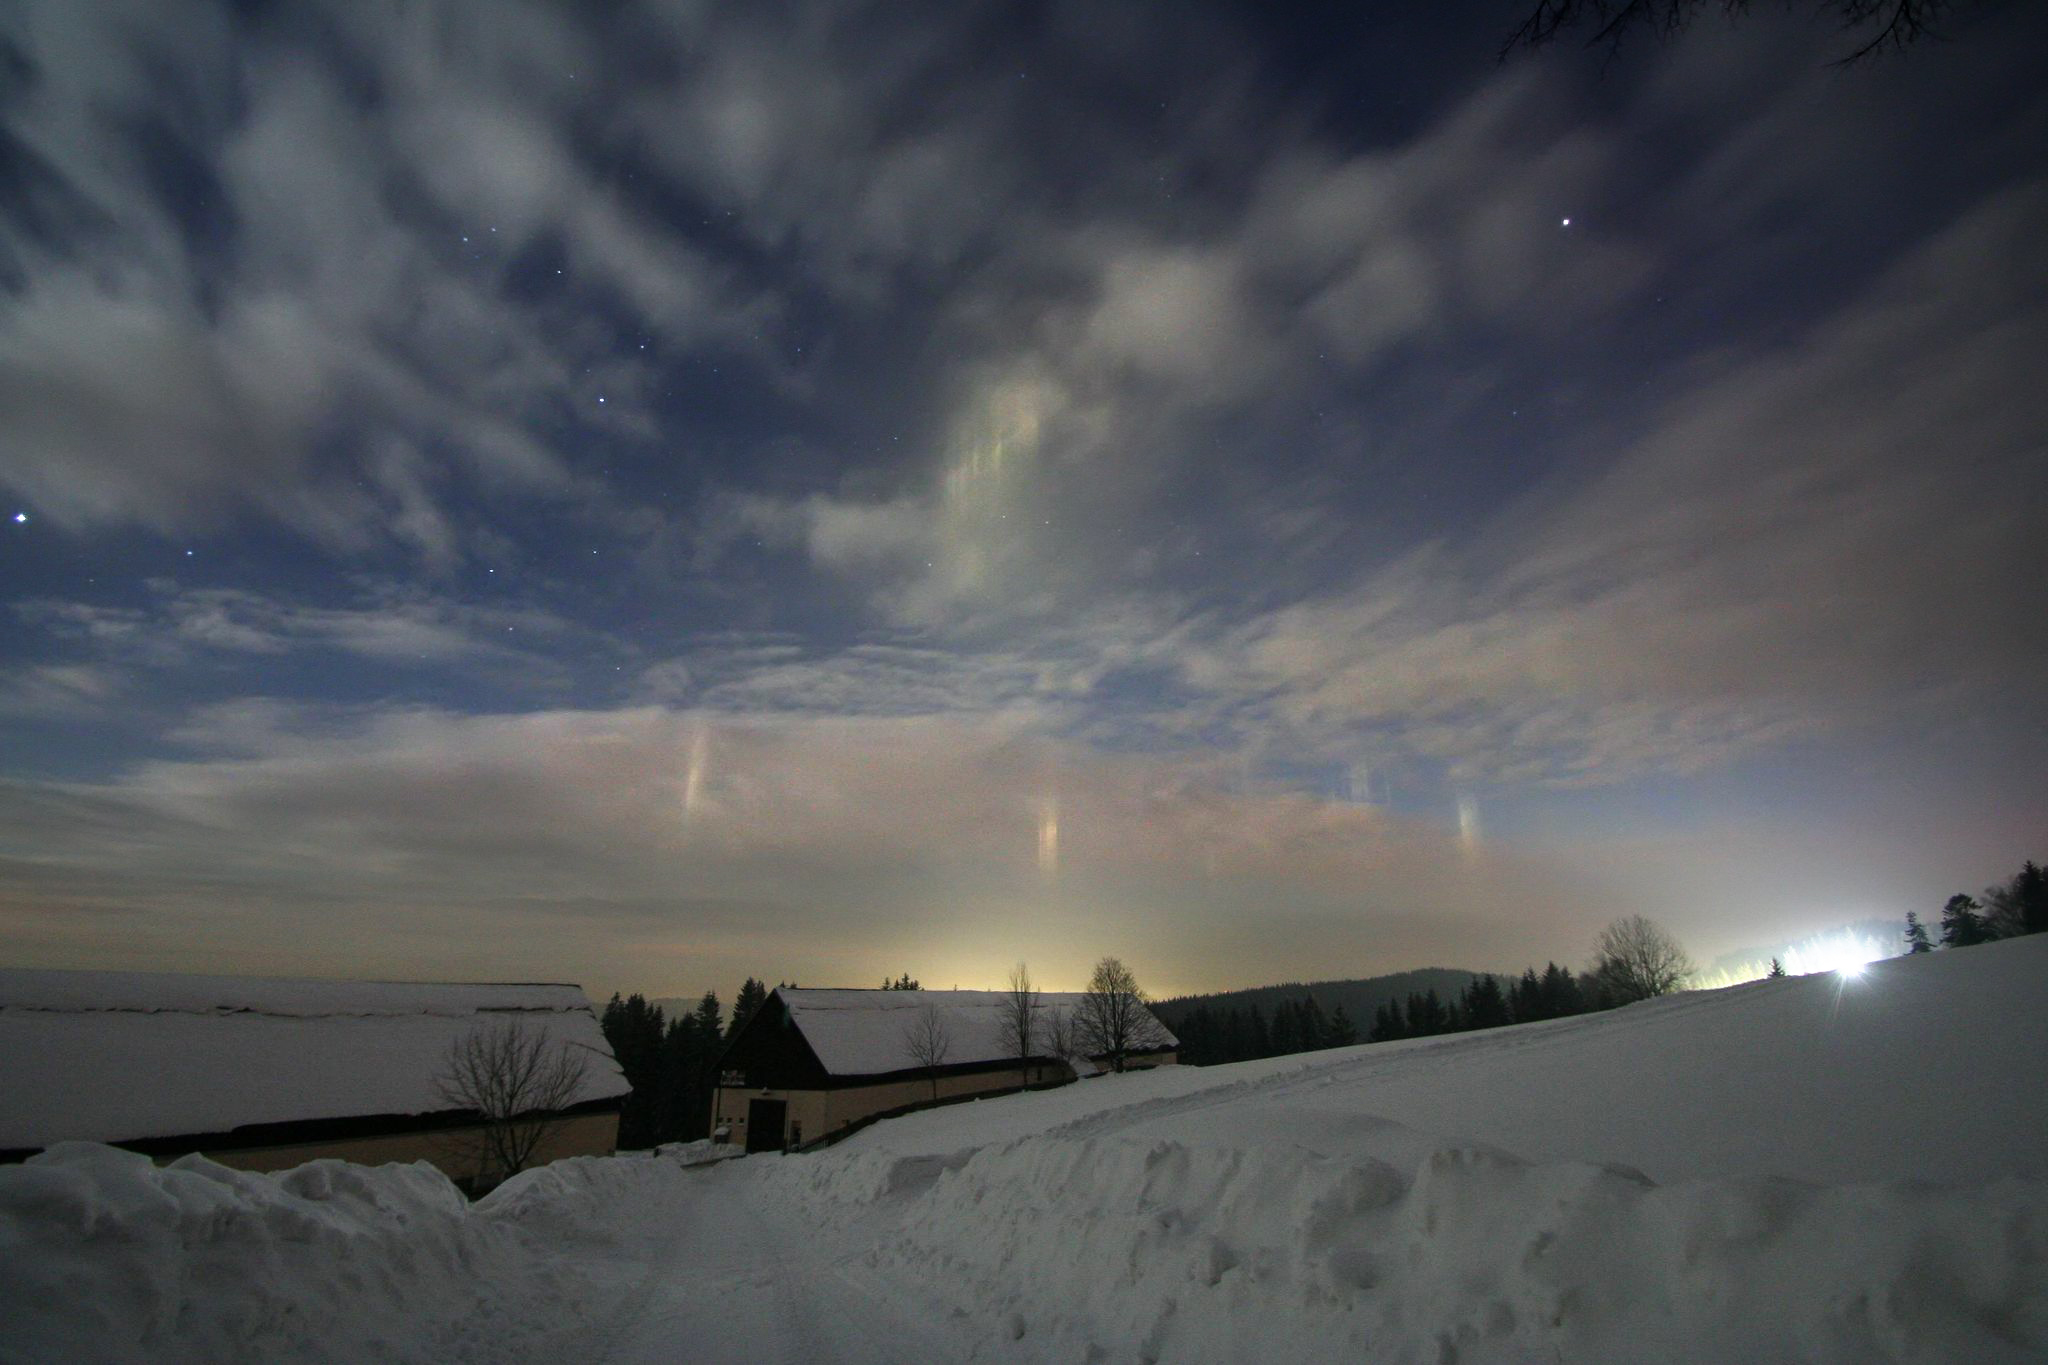 Světlo sjezdovek odražené jako "prasátka" na vrstvě mraku obsahující ledové krystalky. Foto: Jiří Hlisnikovský